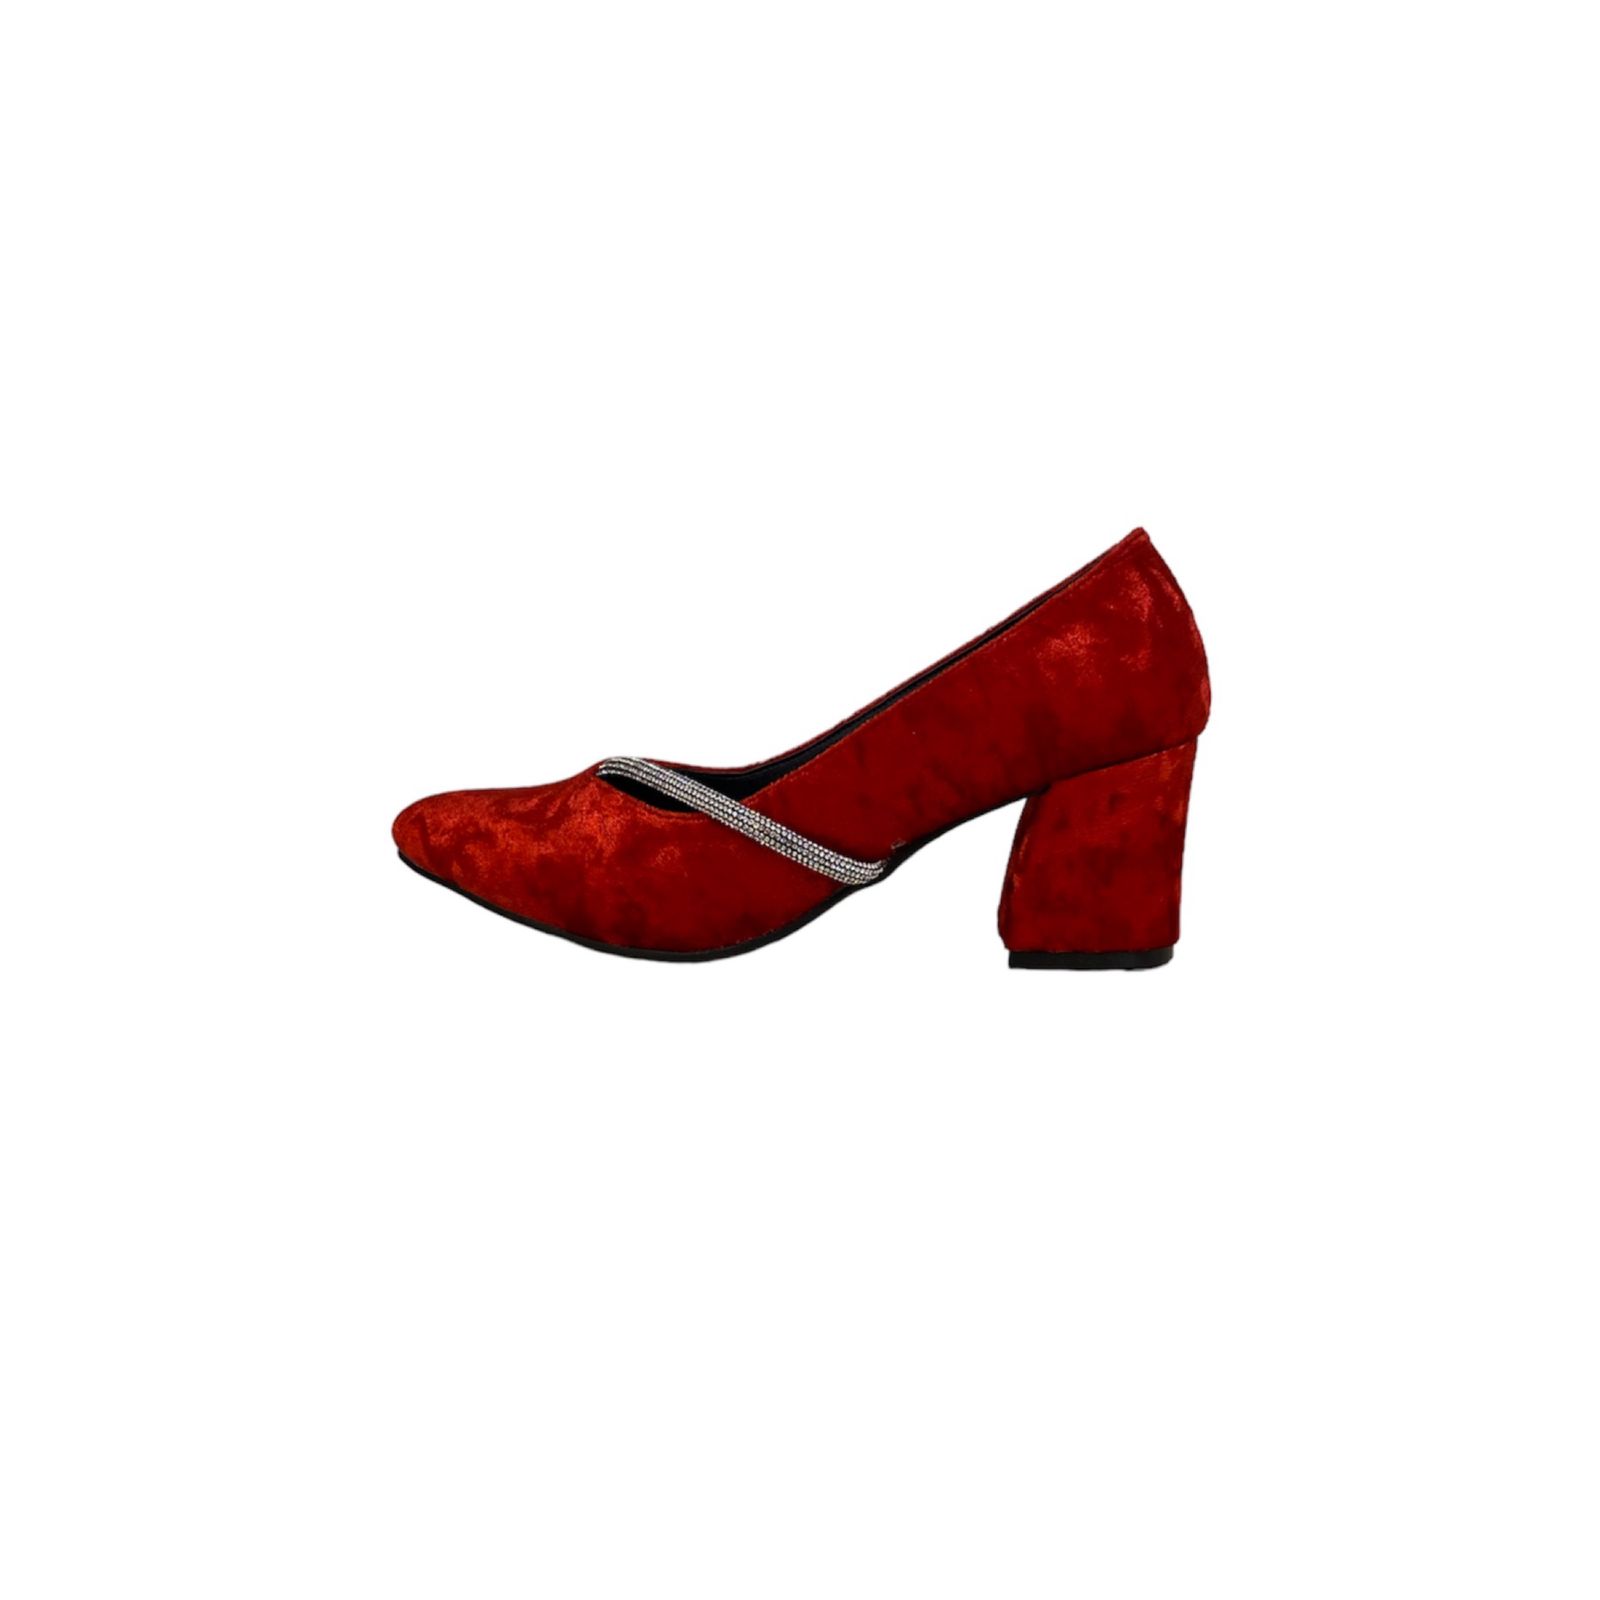 کفش زنانه مدل زیبا مخملی رنگ قرمز -  - 1